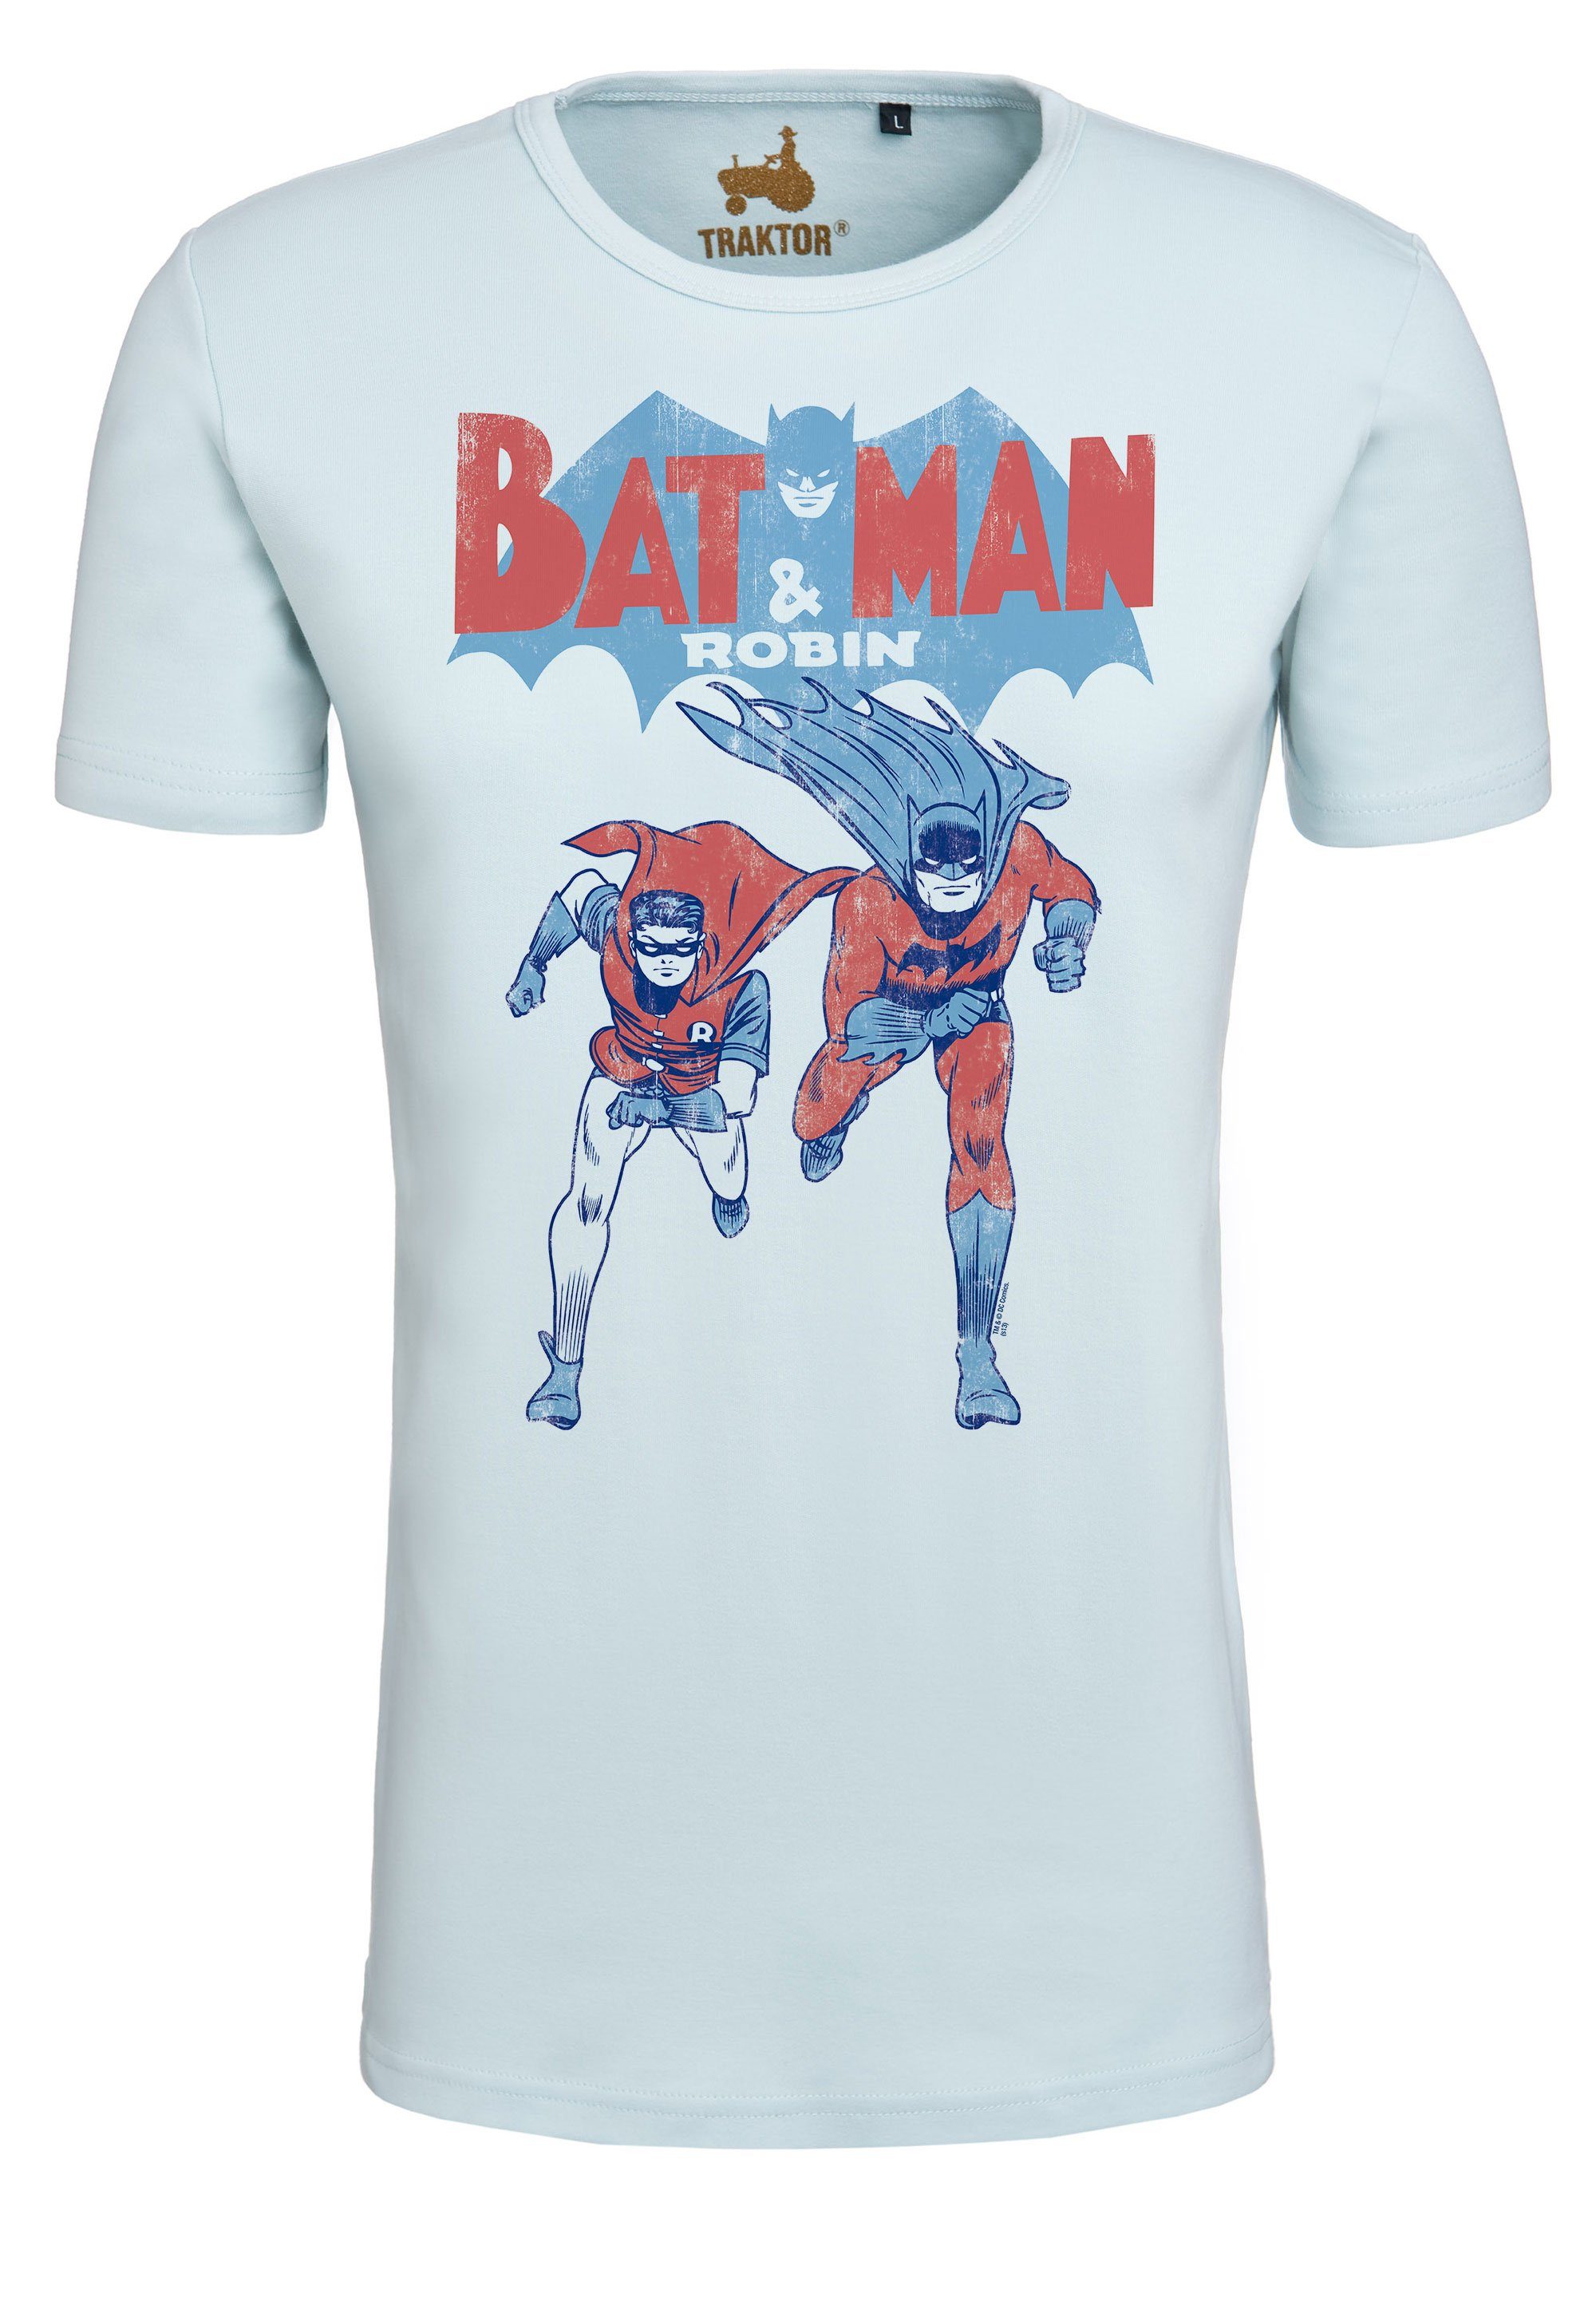 LOGOSHIRT T-Shirt Batman trendigem & Robin Superhelden-Print mit